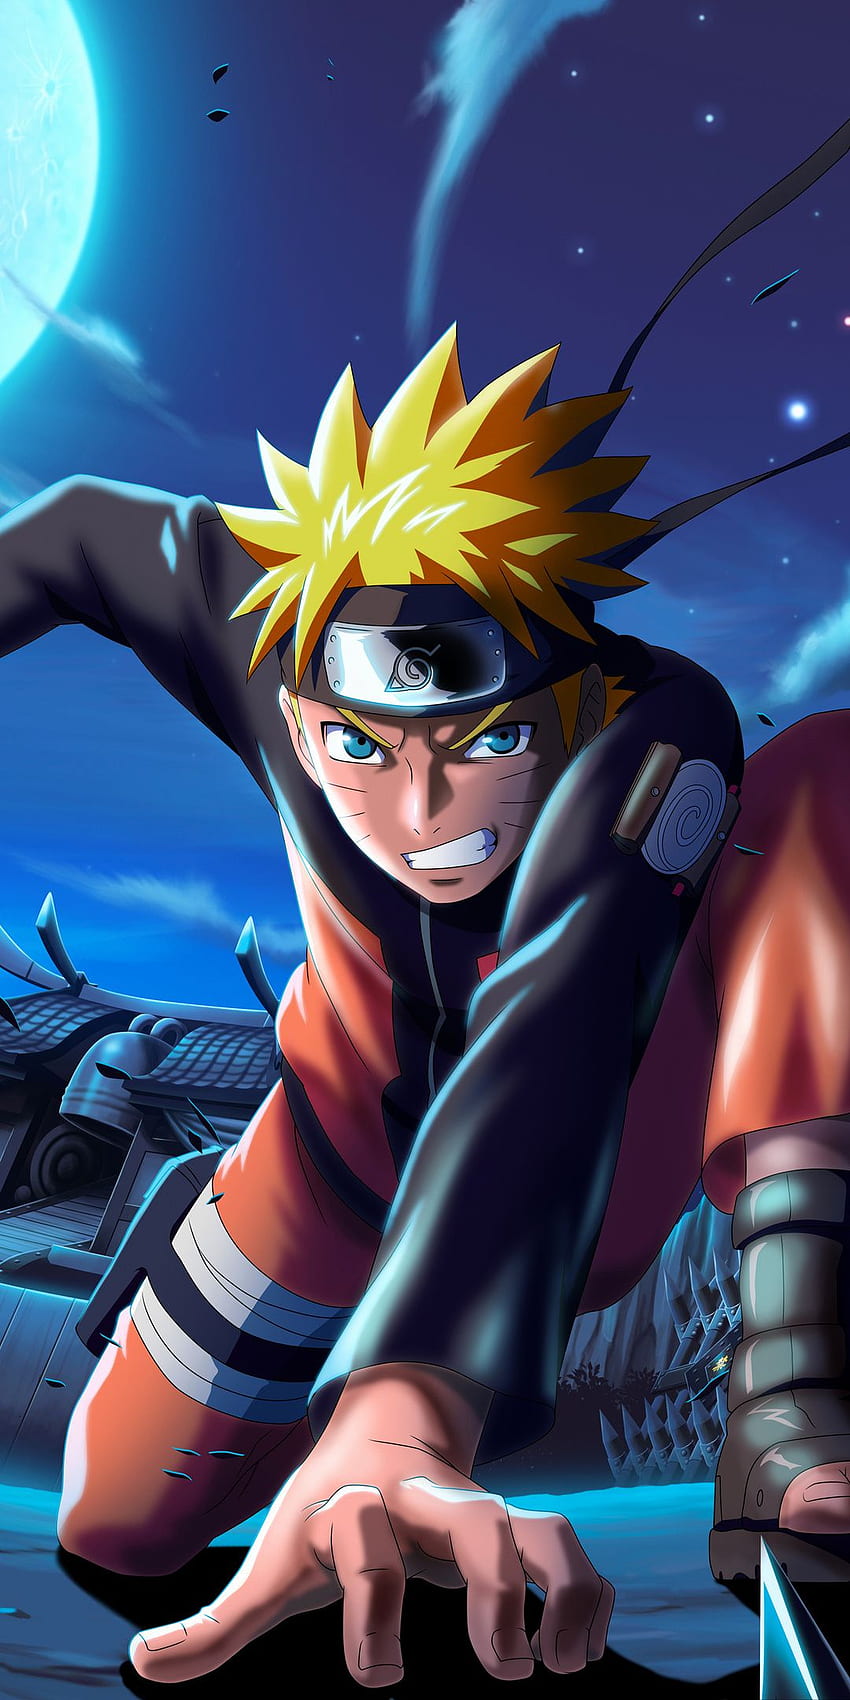 Cùng trải nghiệm game mobile Naruto X Boruto Ninja Voltage hấp dẫn đang được yêu thích hiện nay. Những hình ảnh hoạt hình đầy màu sắc và sinh động, bạn sẽ được tham gia các trận đấu gốc cây nhưng đầy kịch tính để tìm kiếm sức mạnh và trở thành chiến binh mạnh nhất trong làng Ninja.